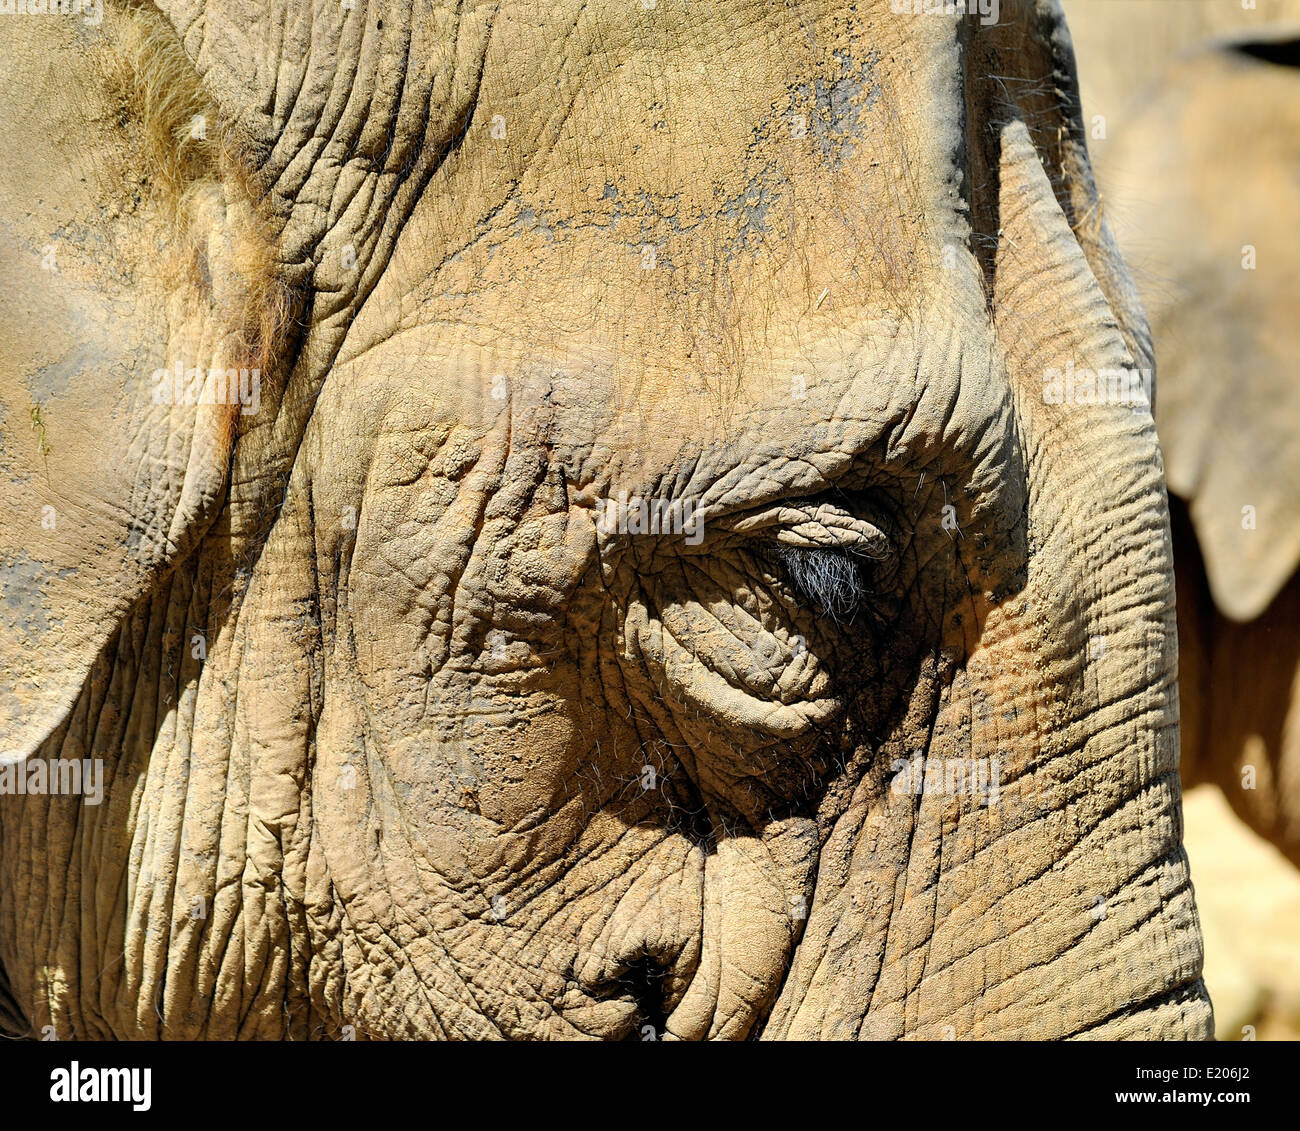 Asiatische Elefanten im Twycross Zoo Atherstone Warwickshire England UK Stockfoto